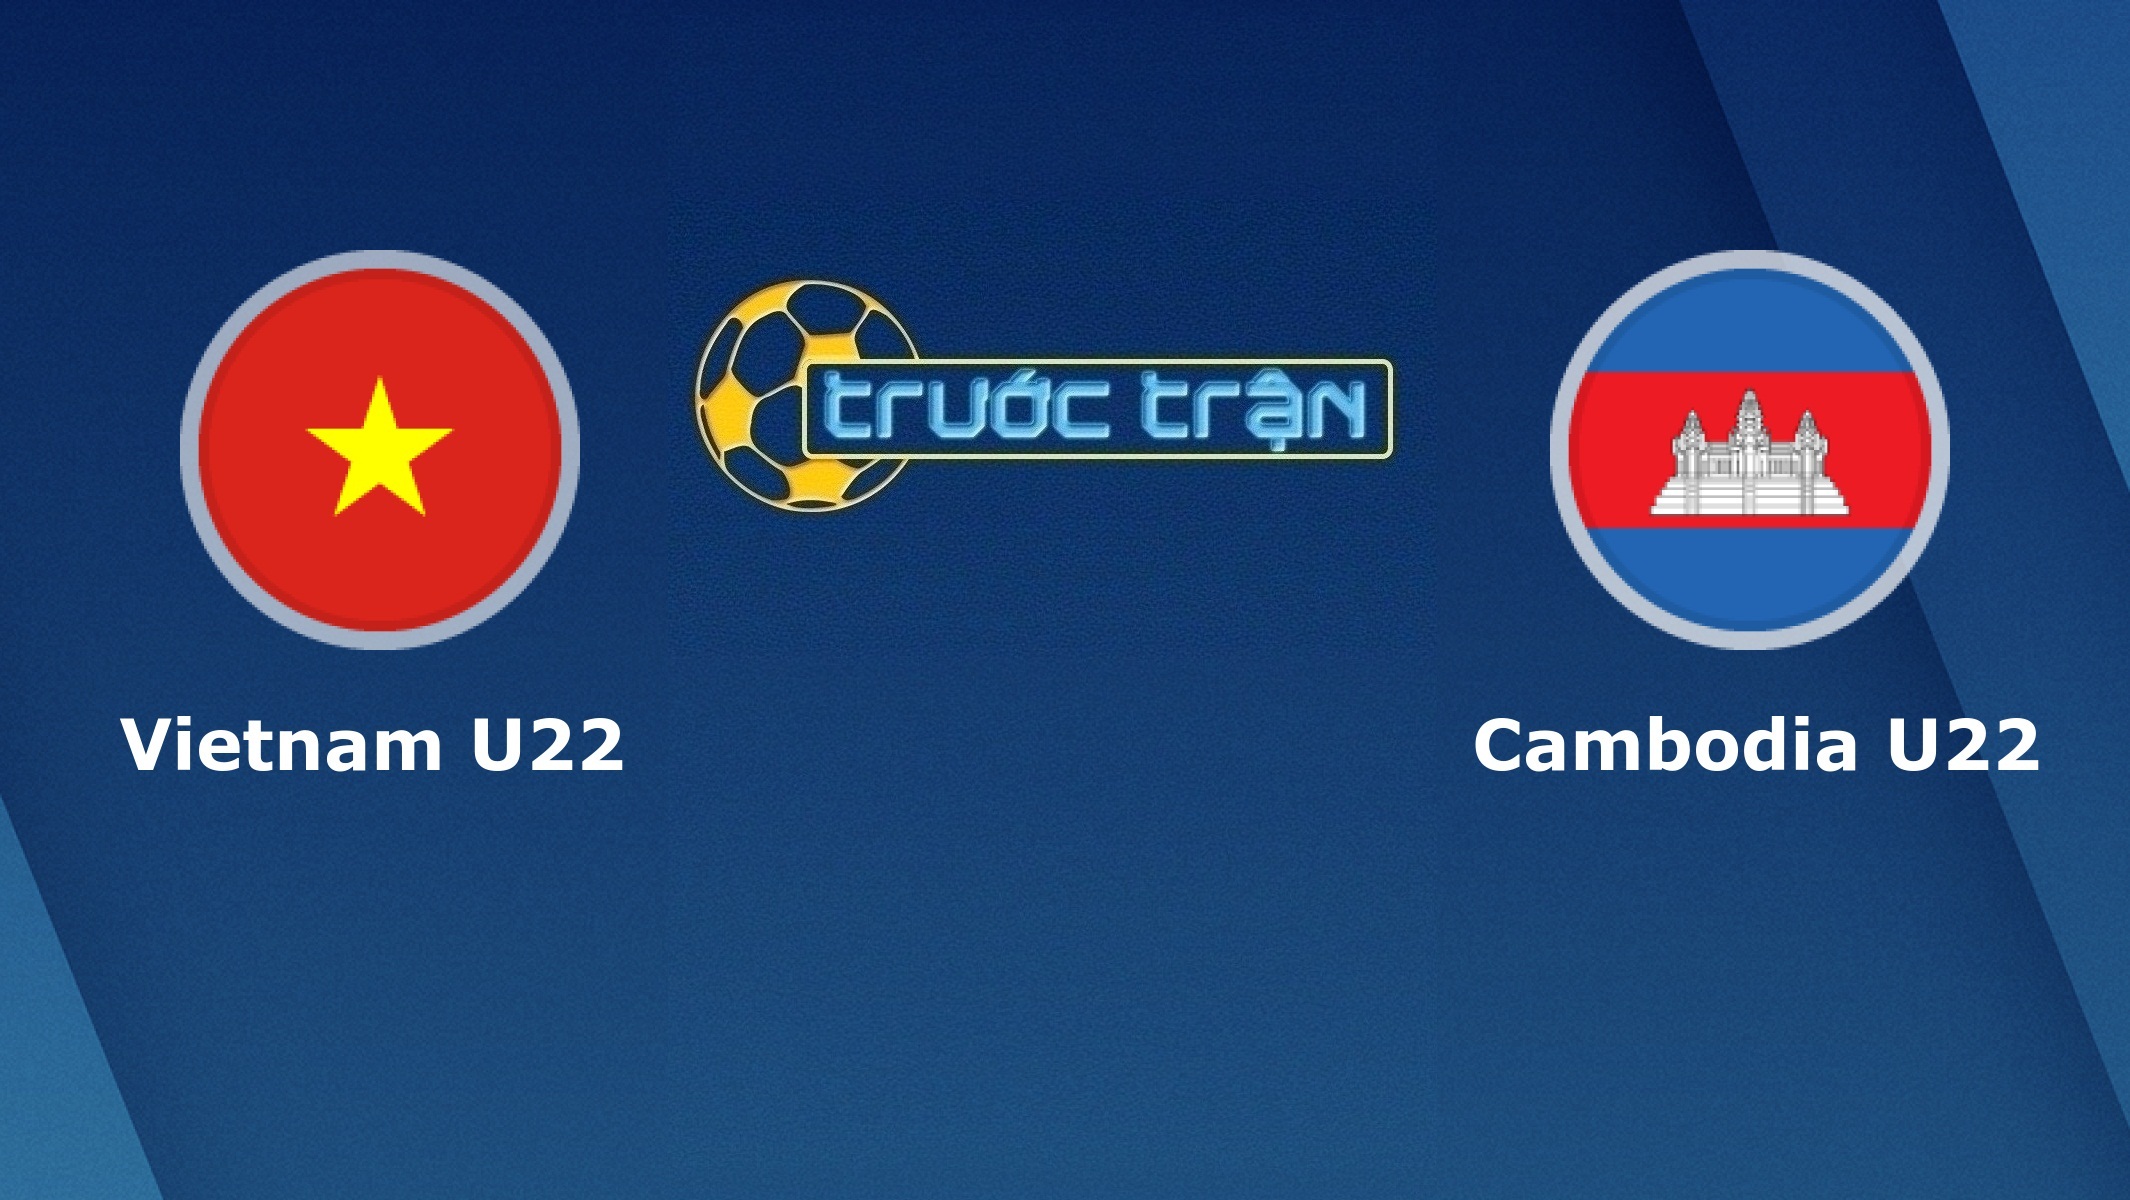 U22 Việt Nam vs U22 Cambodia – Tip kèo bóng đá hôm nay – 07/12